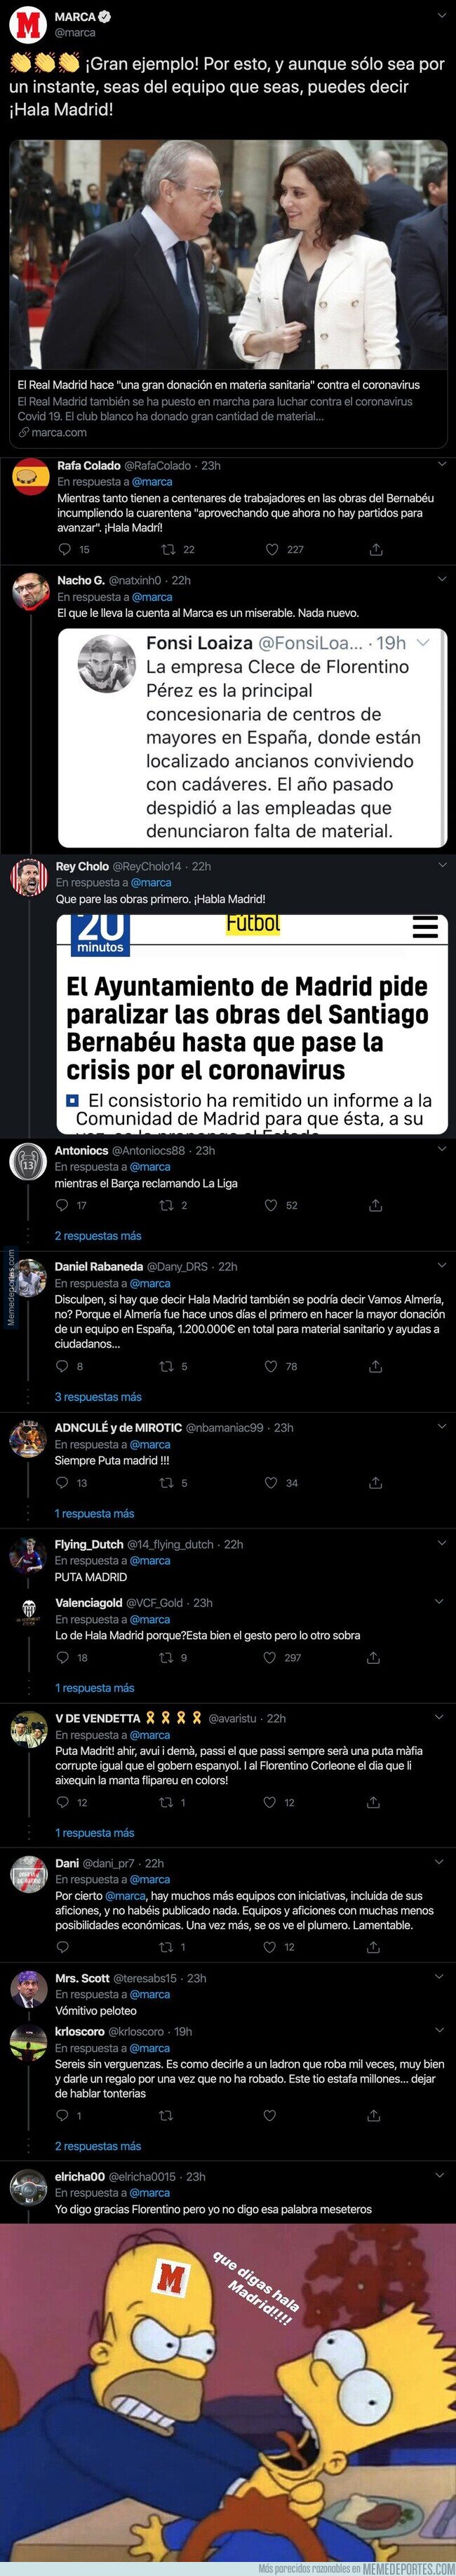 1101536 - El Real Madrid hace una donación a la ciudad por el coronavirus y el diario MARCA ha puesto un tuit que ha causado gran indignación entre todos los aficionados